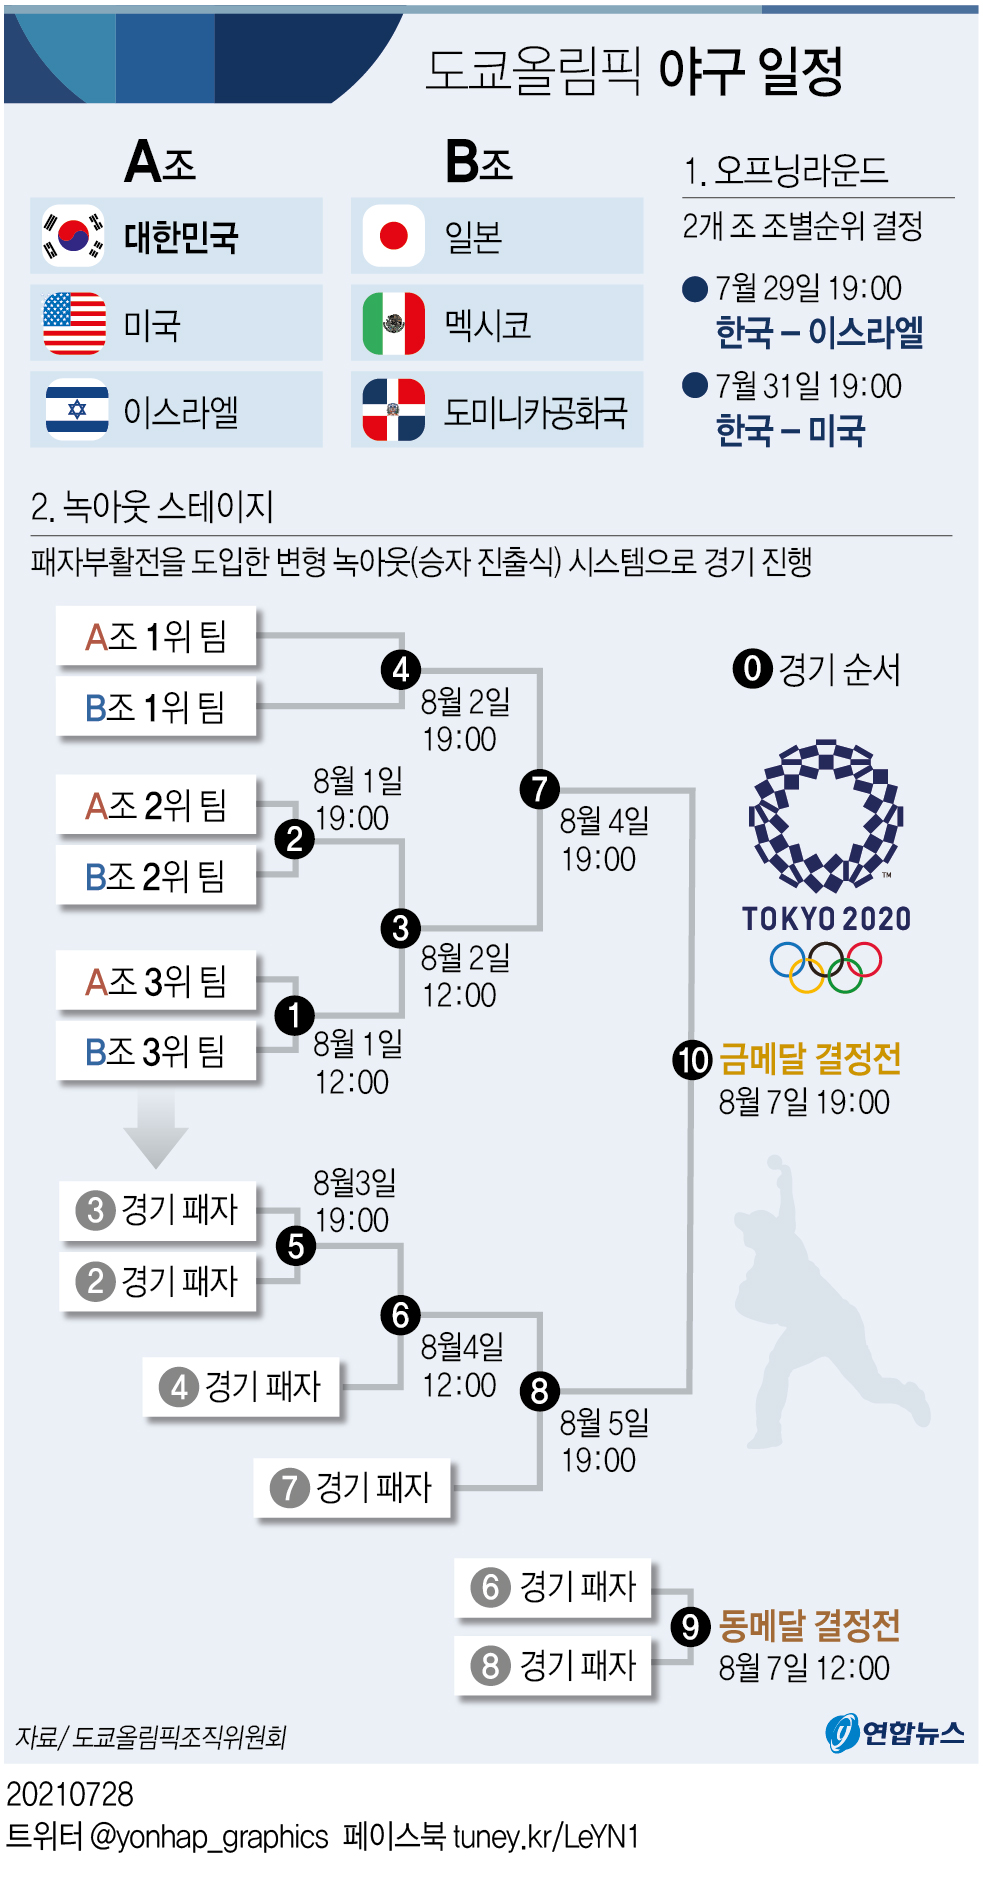 [그래픽] 도쿄올림픽 야구 일정